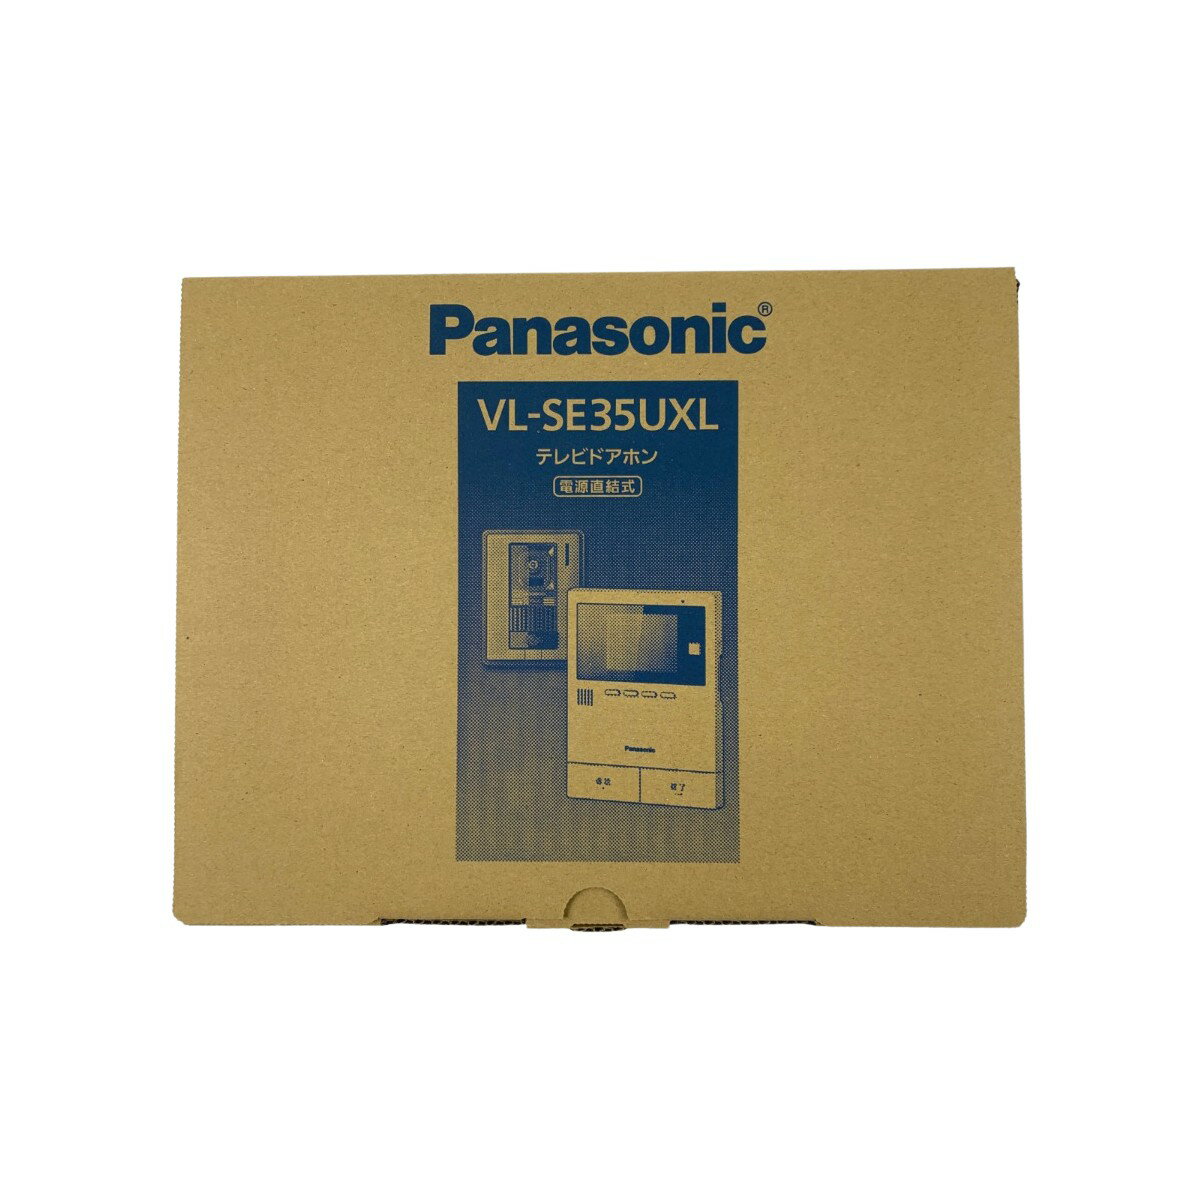 ▽▽【中古】Panasonic パナソニック テレビドアホン 電源直結式 VL-SE35UXL 開封未使用品 Sランク